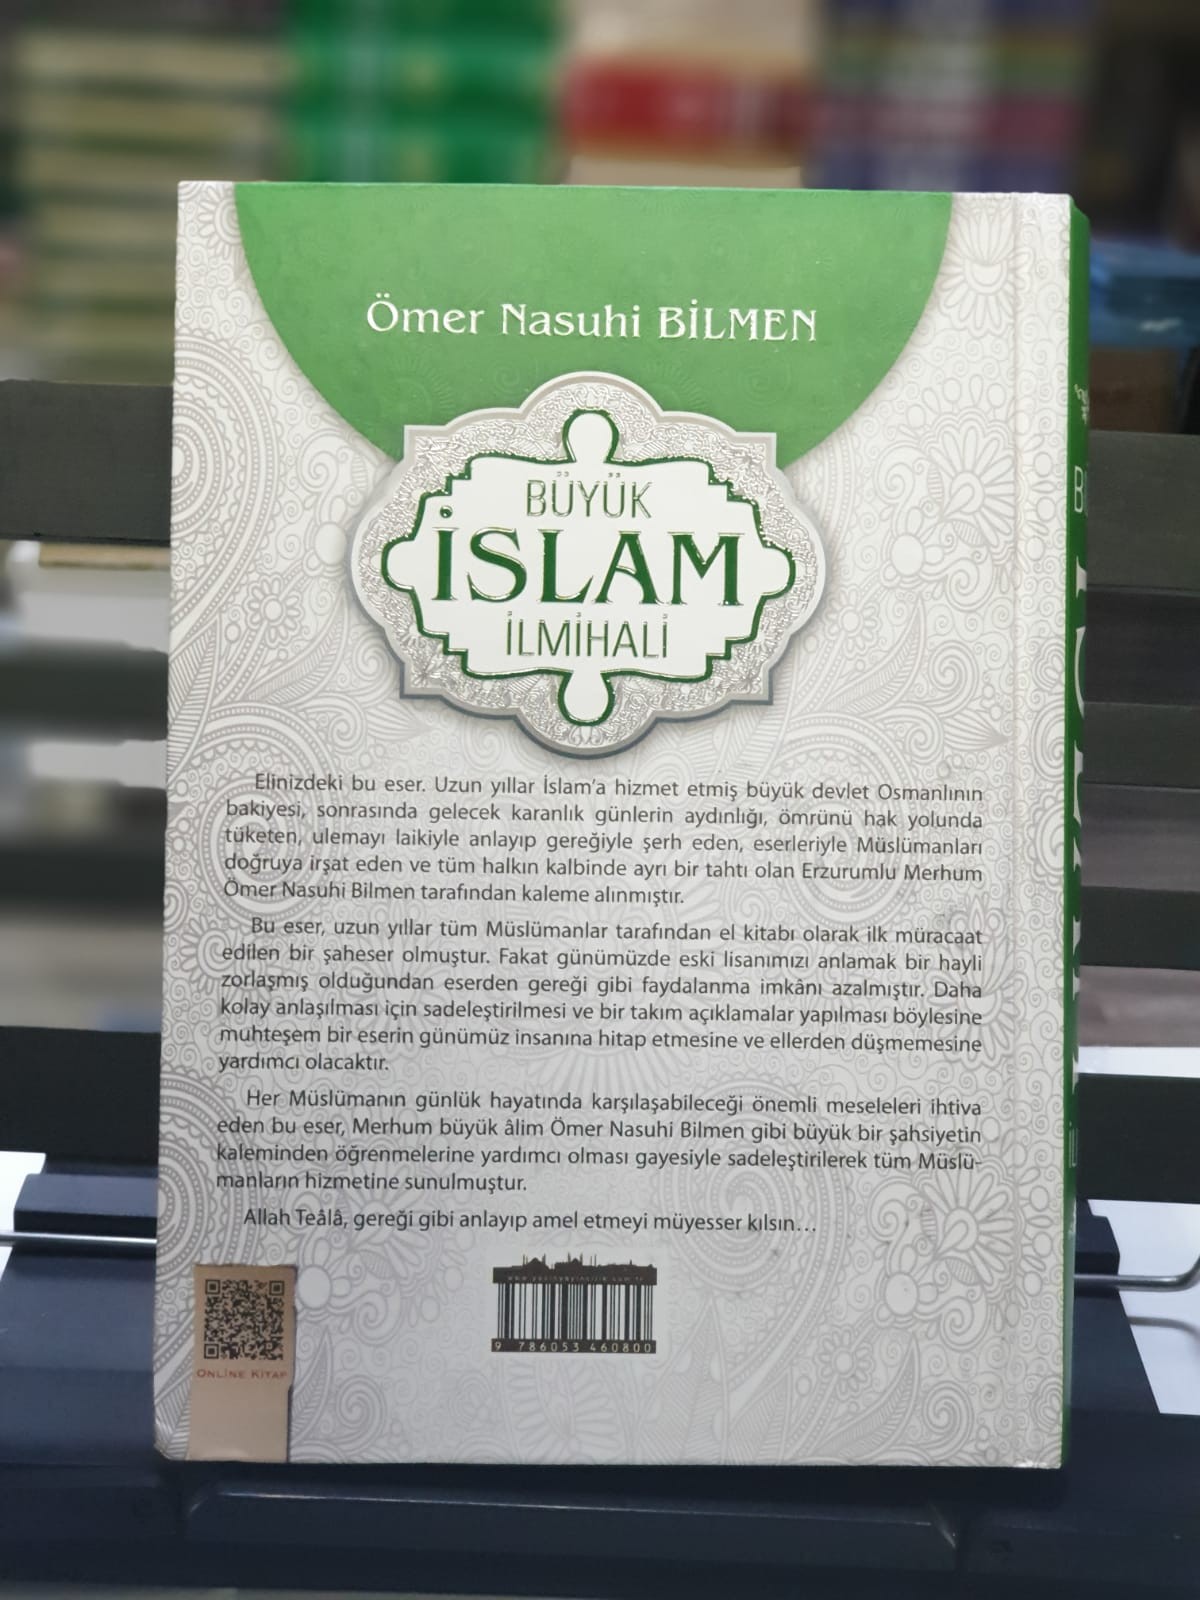 Büyük İslam İlmihali - Yasin Yayınevi